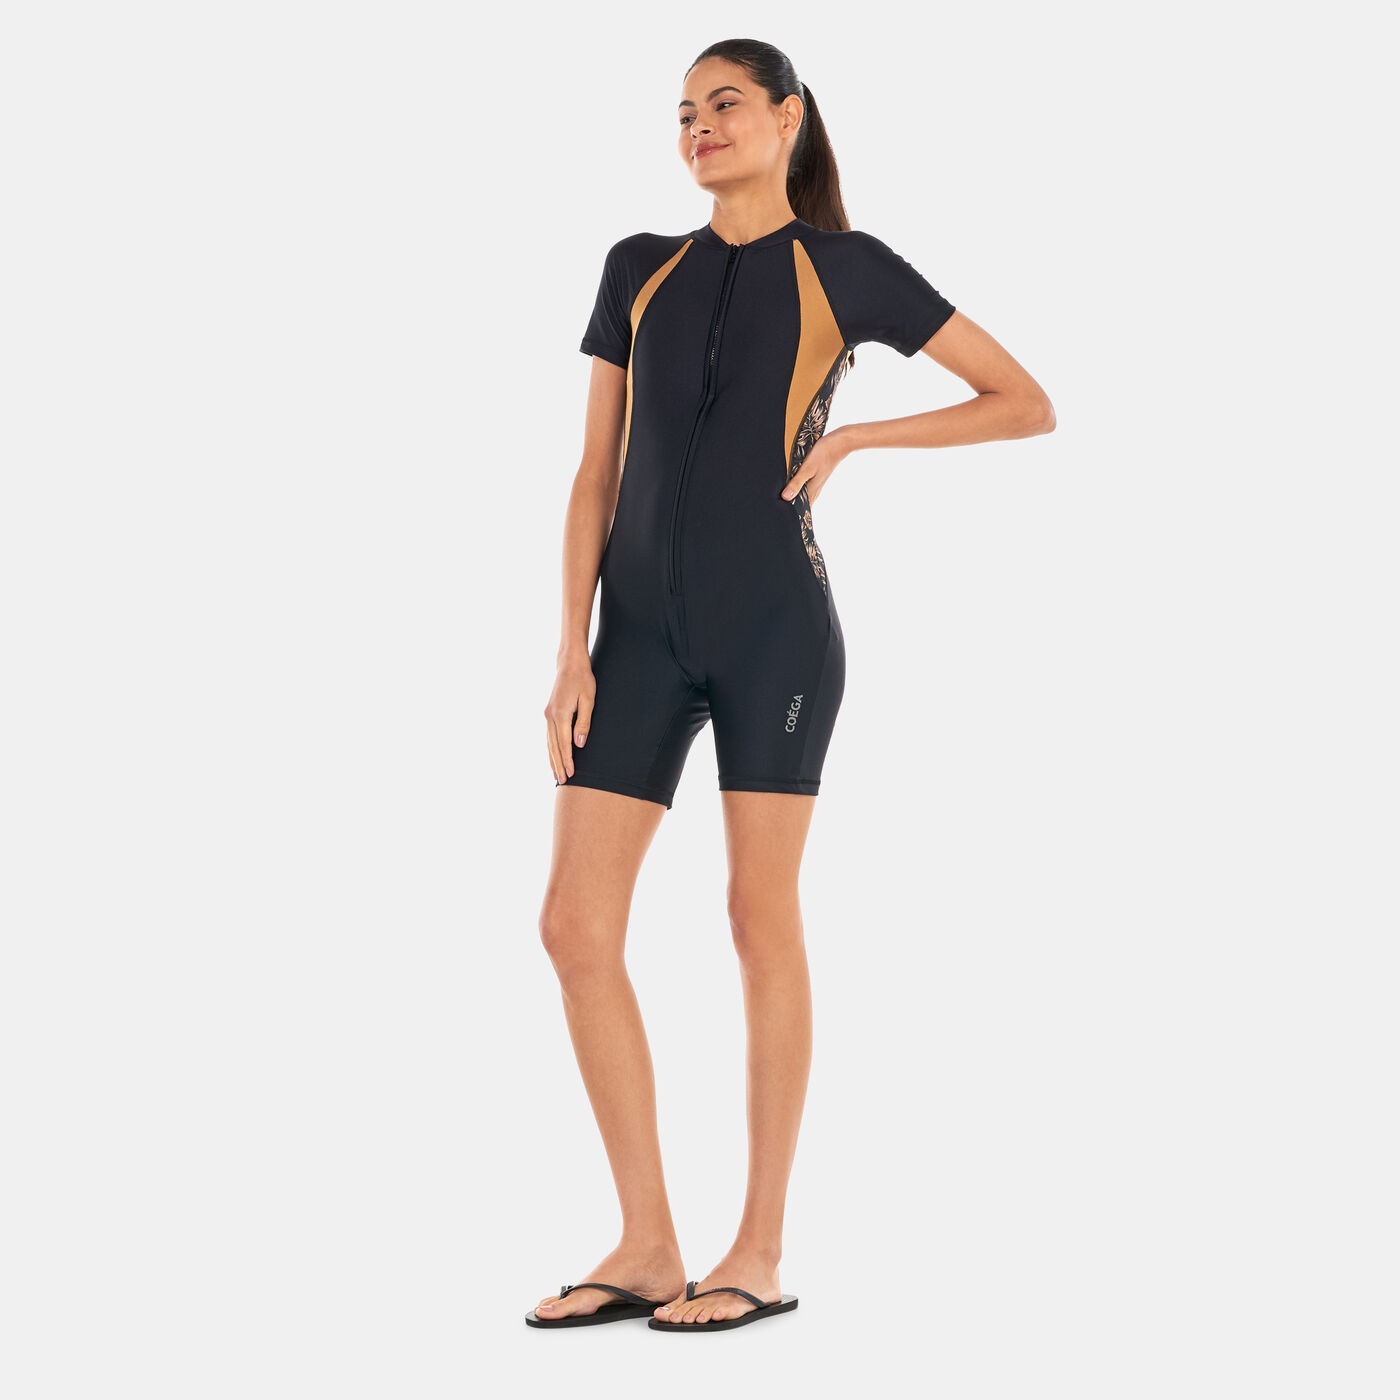 Women's Short Allover Print SlimKini Swimsuit